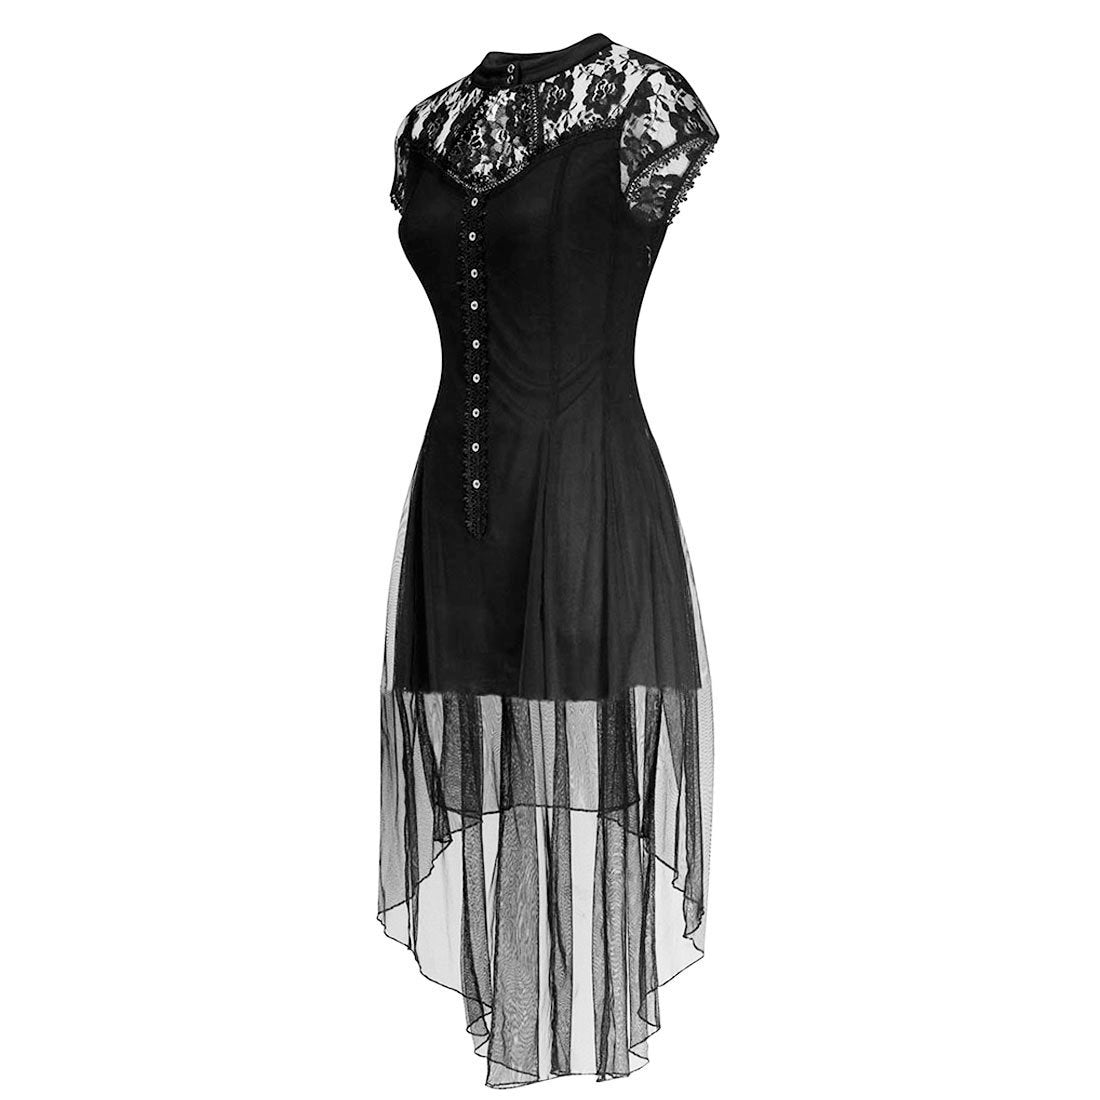 Elena Black Mesh Gothic Dress - Corset Revolution